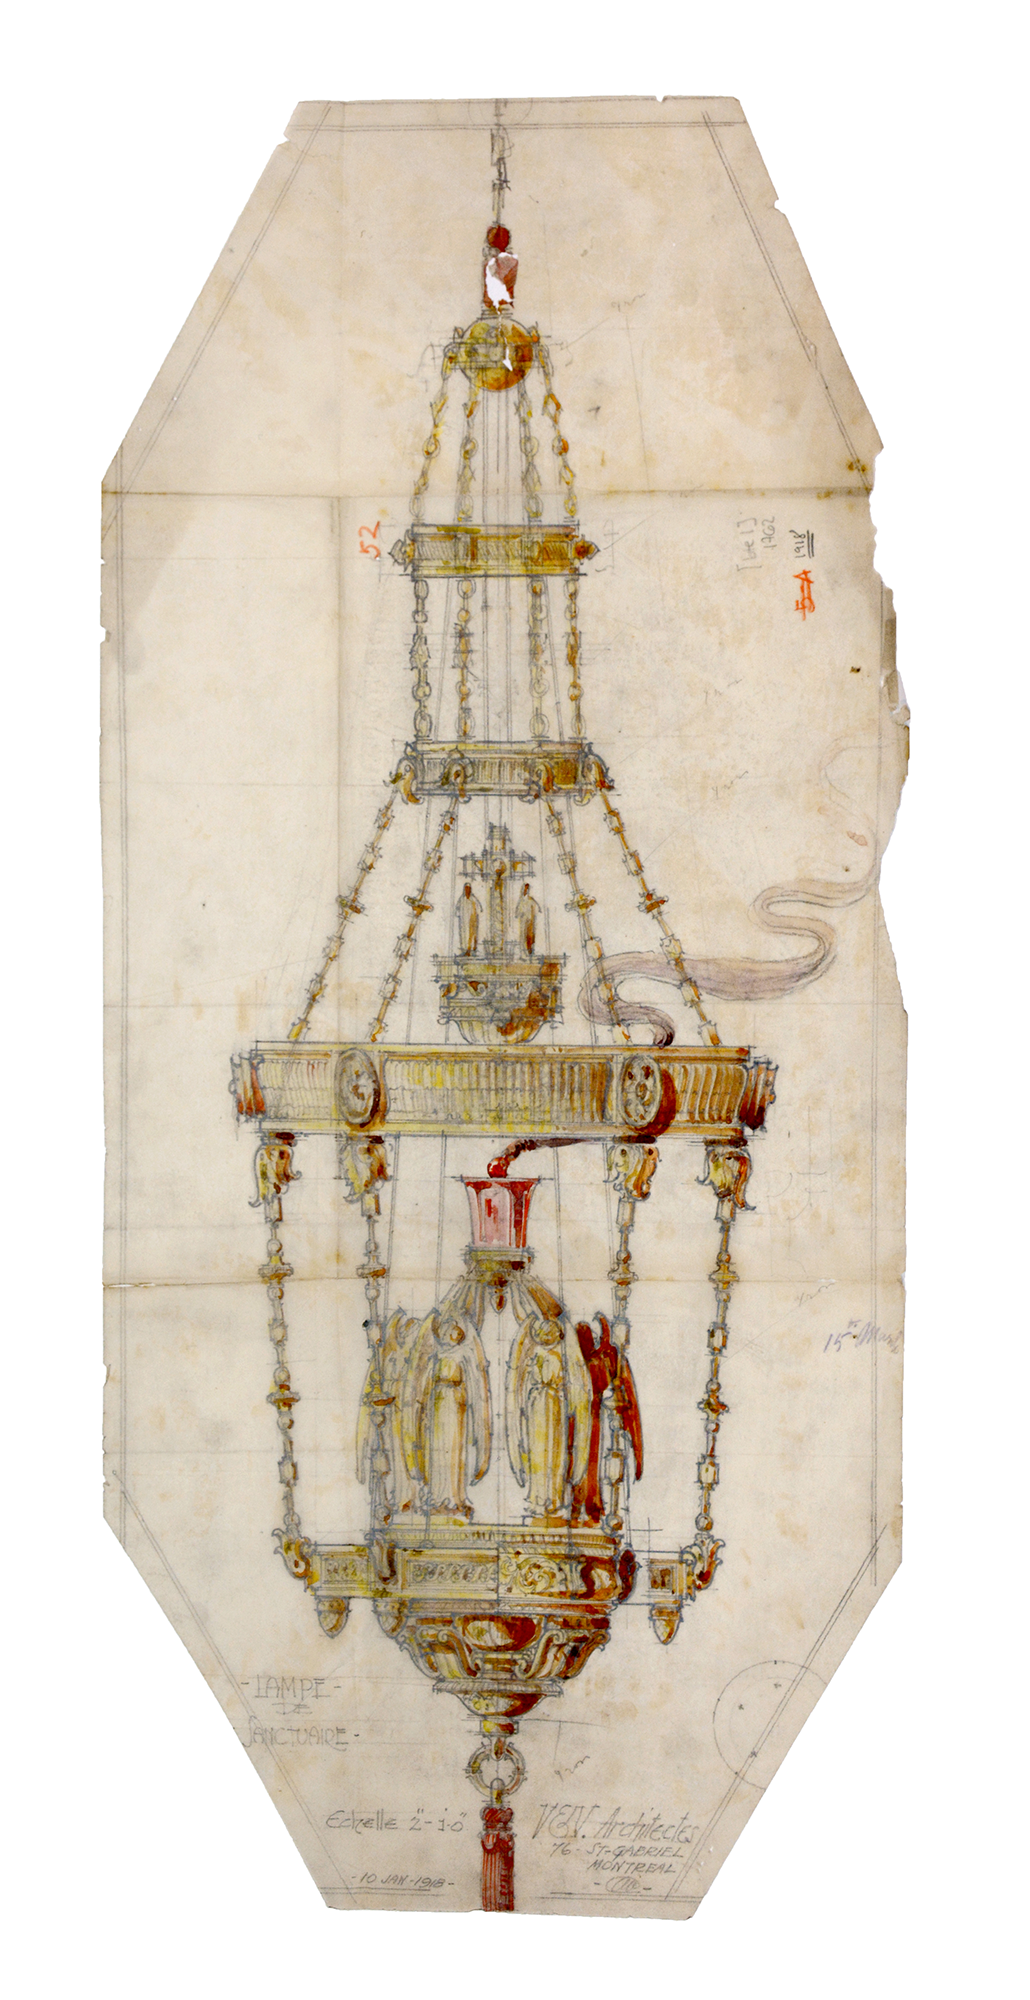 La basilique imaginaire - La crypte - document no 1762